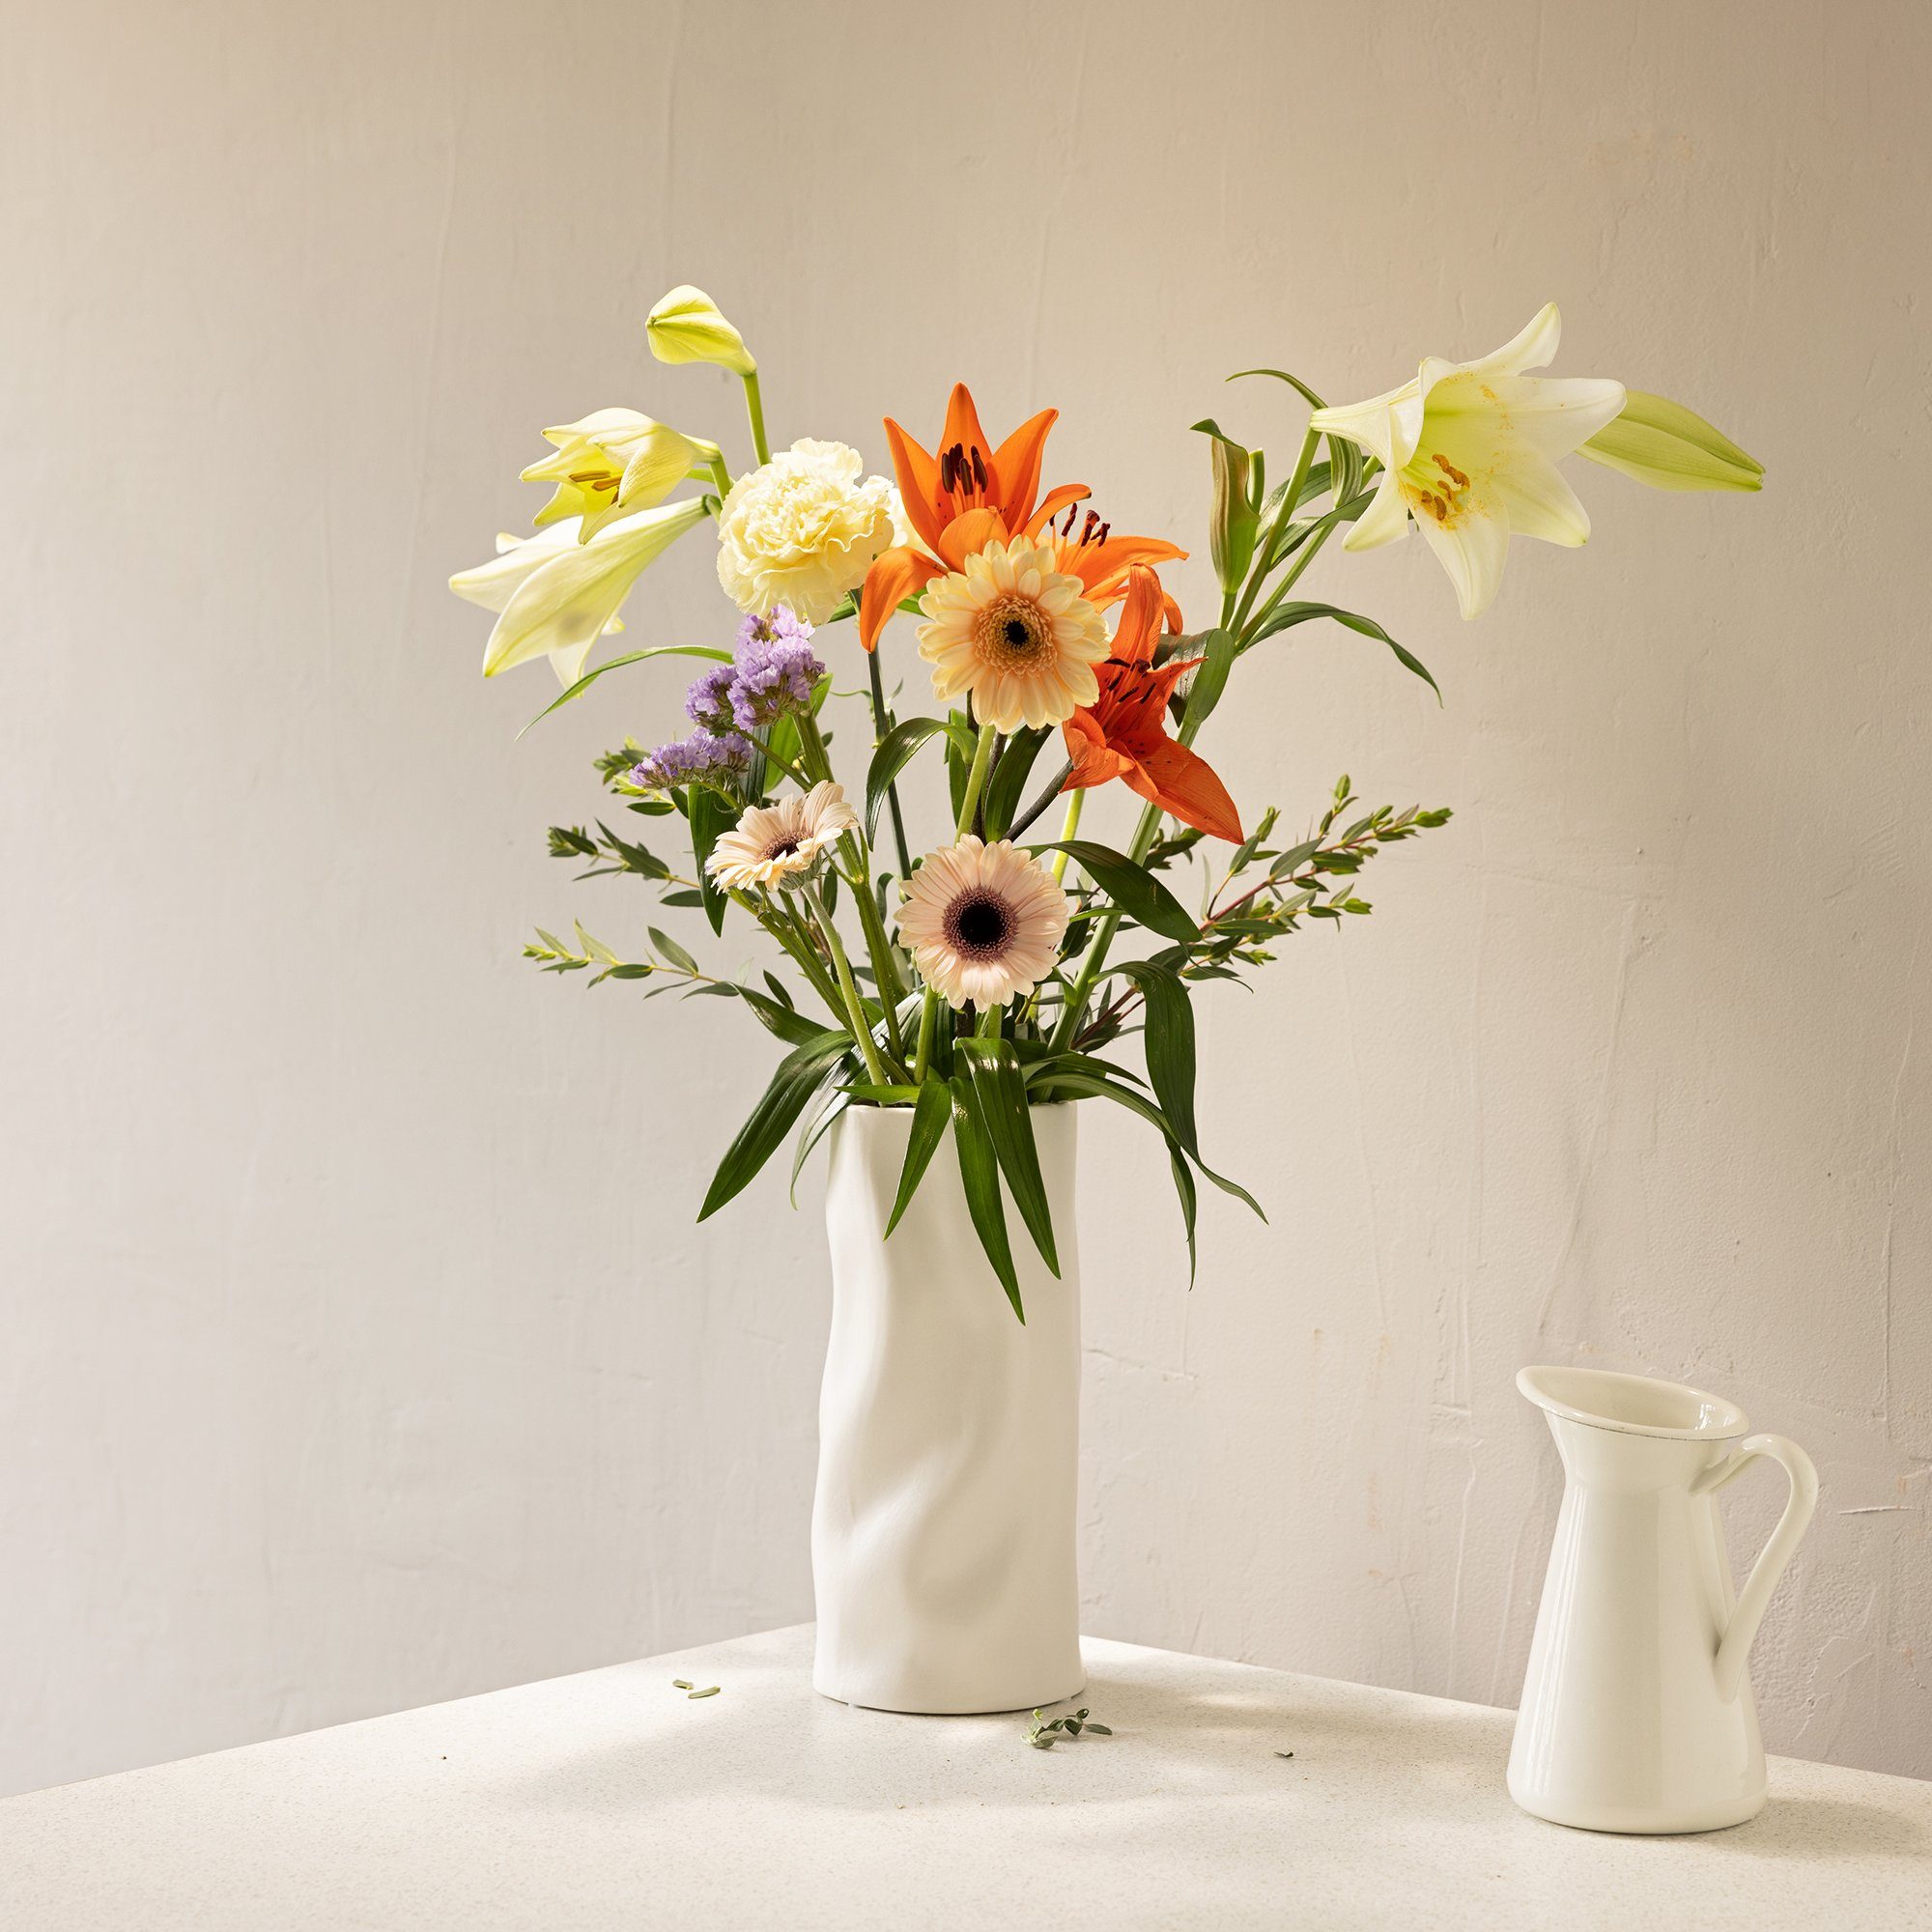 Dekovase - Wohnzimmer Vase Navaris modern weiß Blumenvase Blumen - Vase Deko